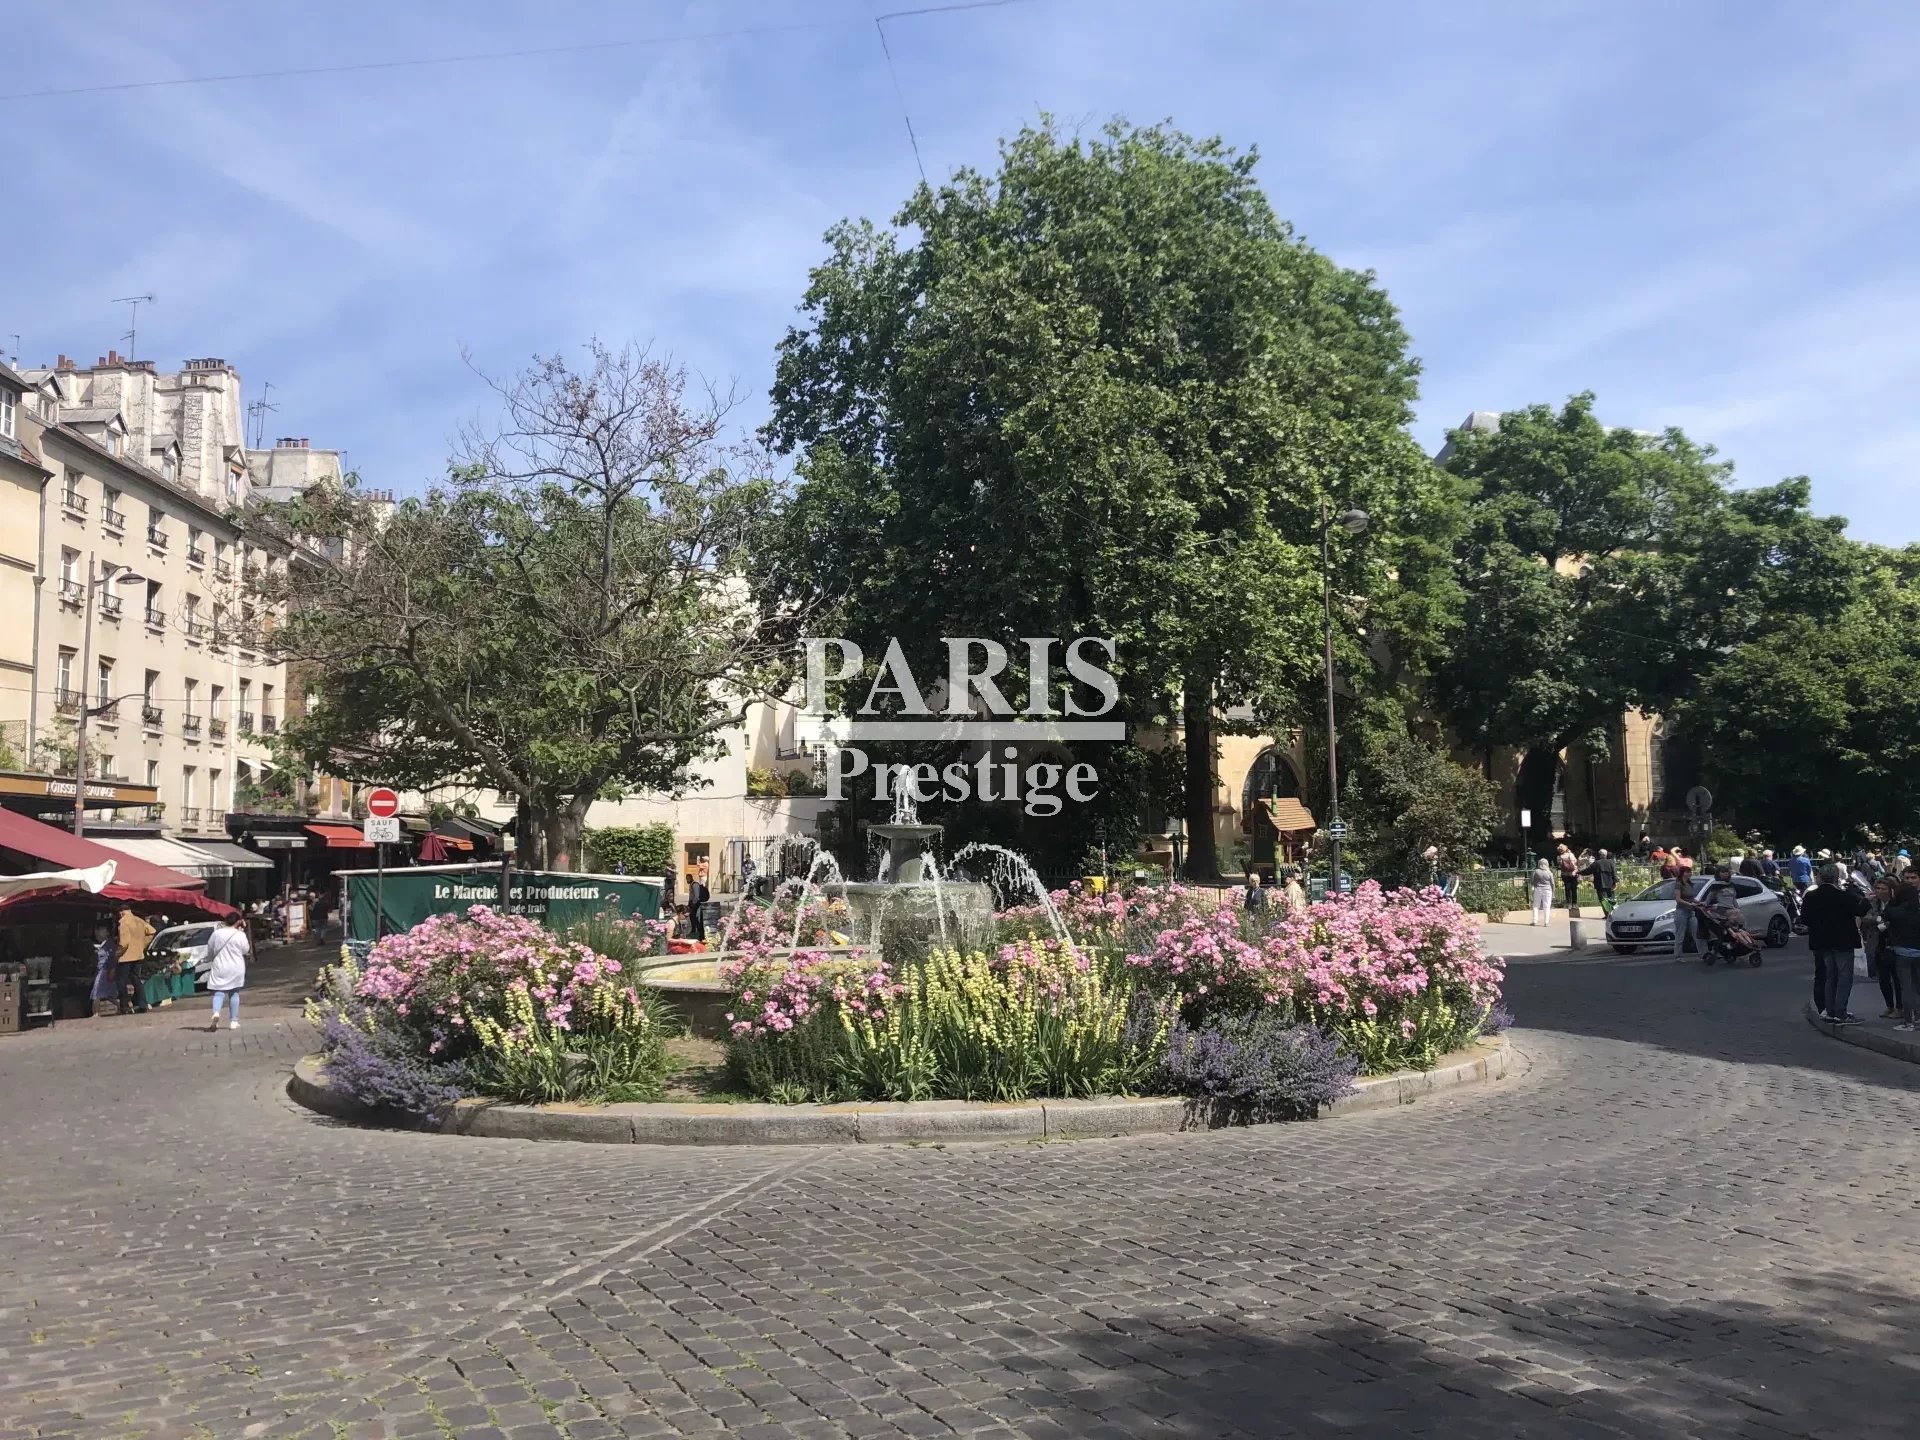 Sale Apartment - Paris 5th (Paris 5ème) Jardin-des-Plantes